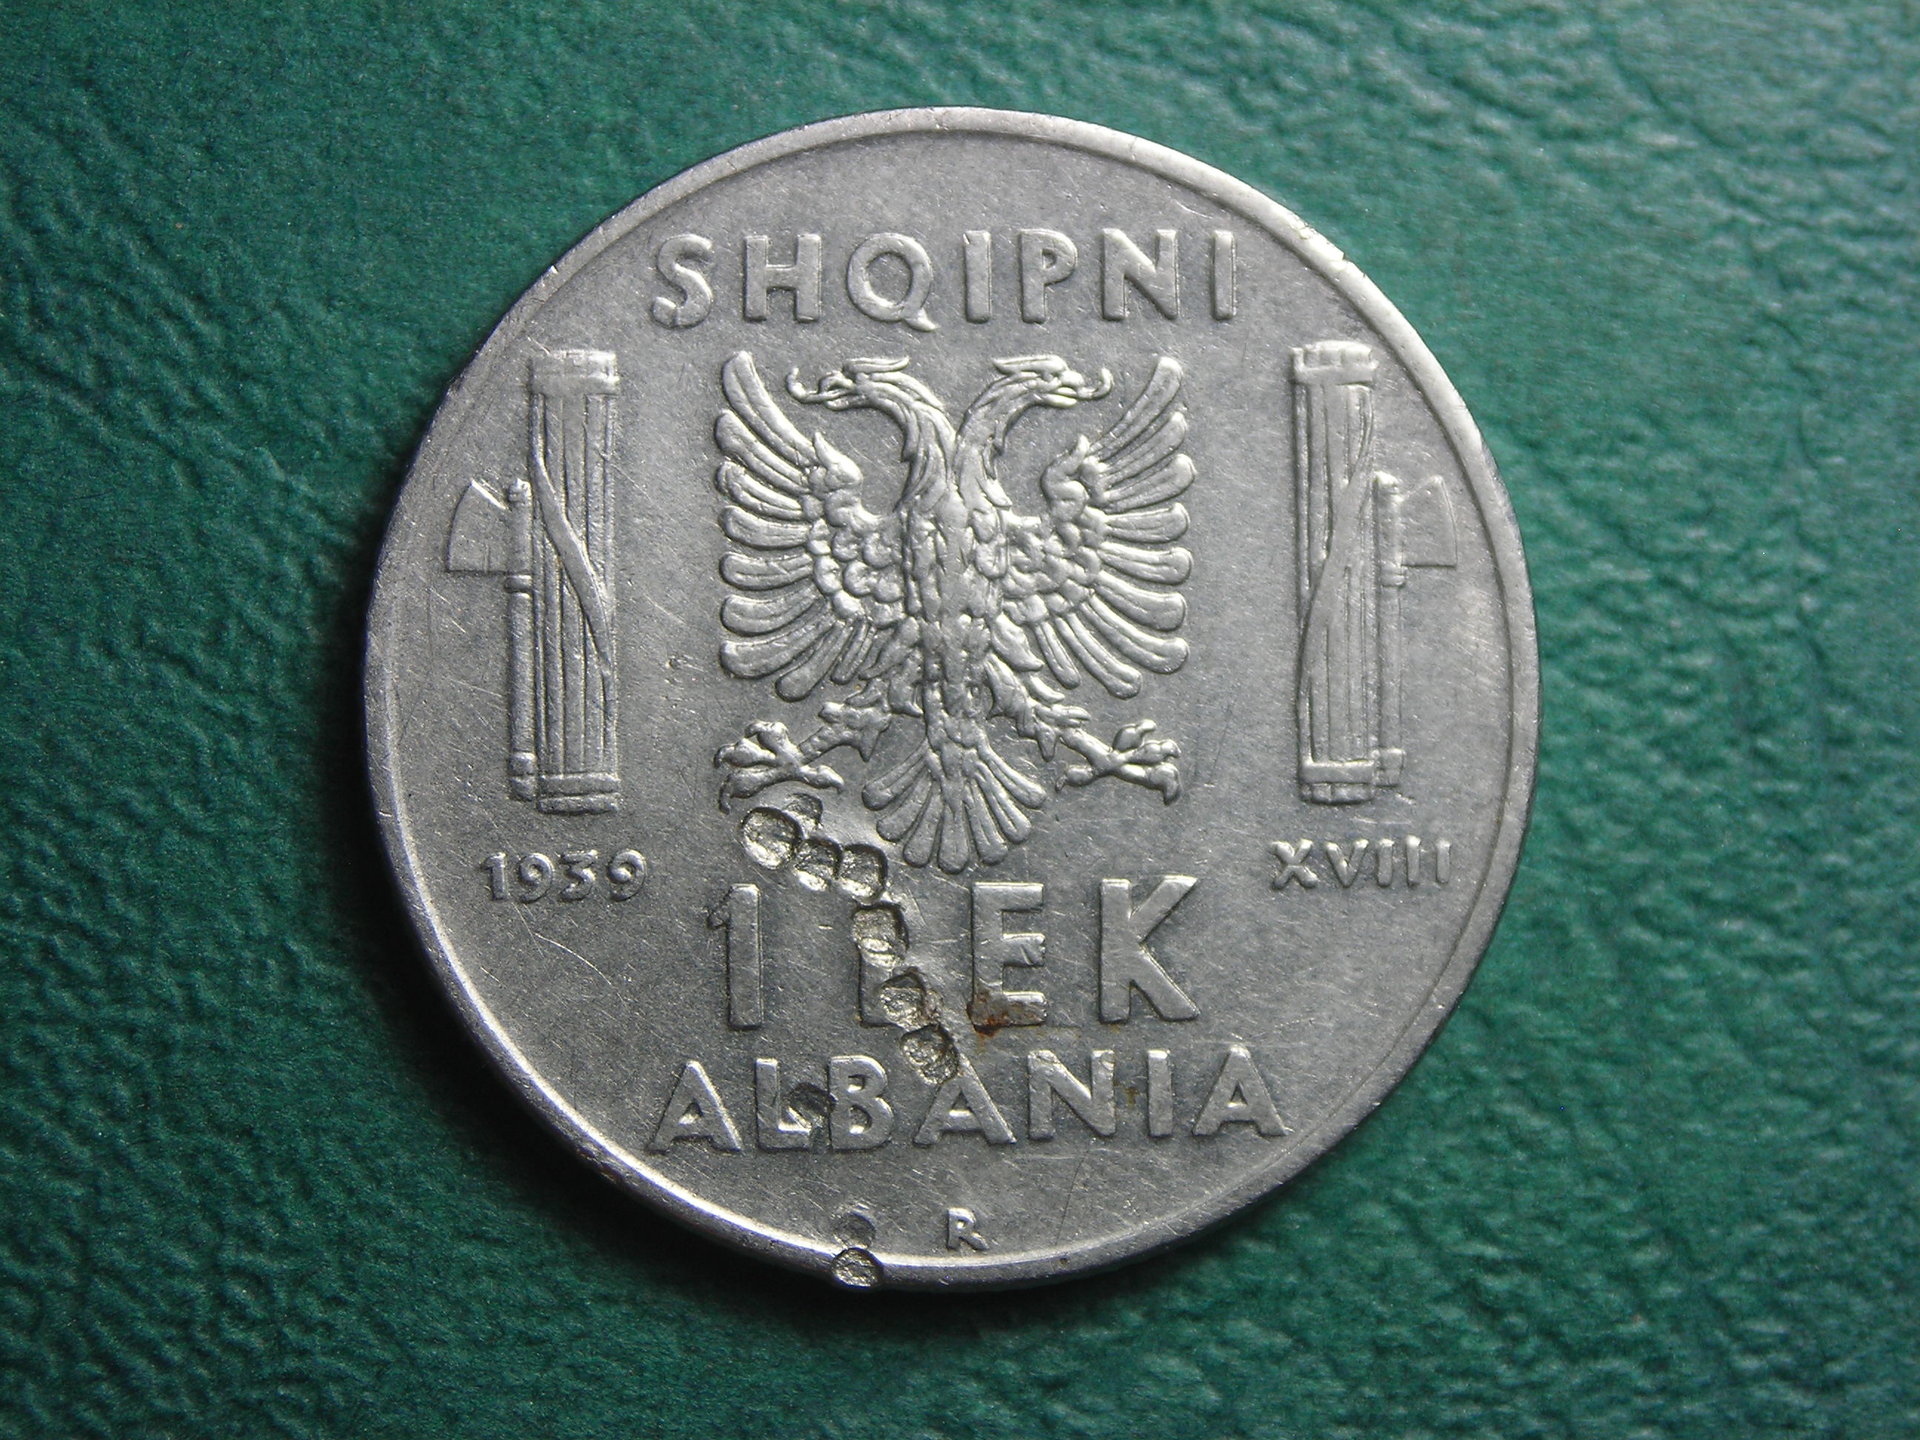 1939 Albania 1 lek rev.JPG